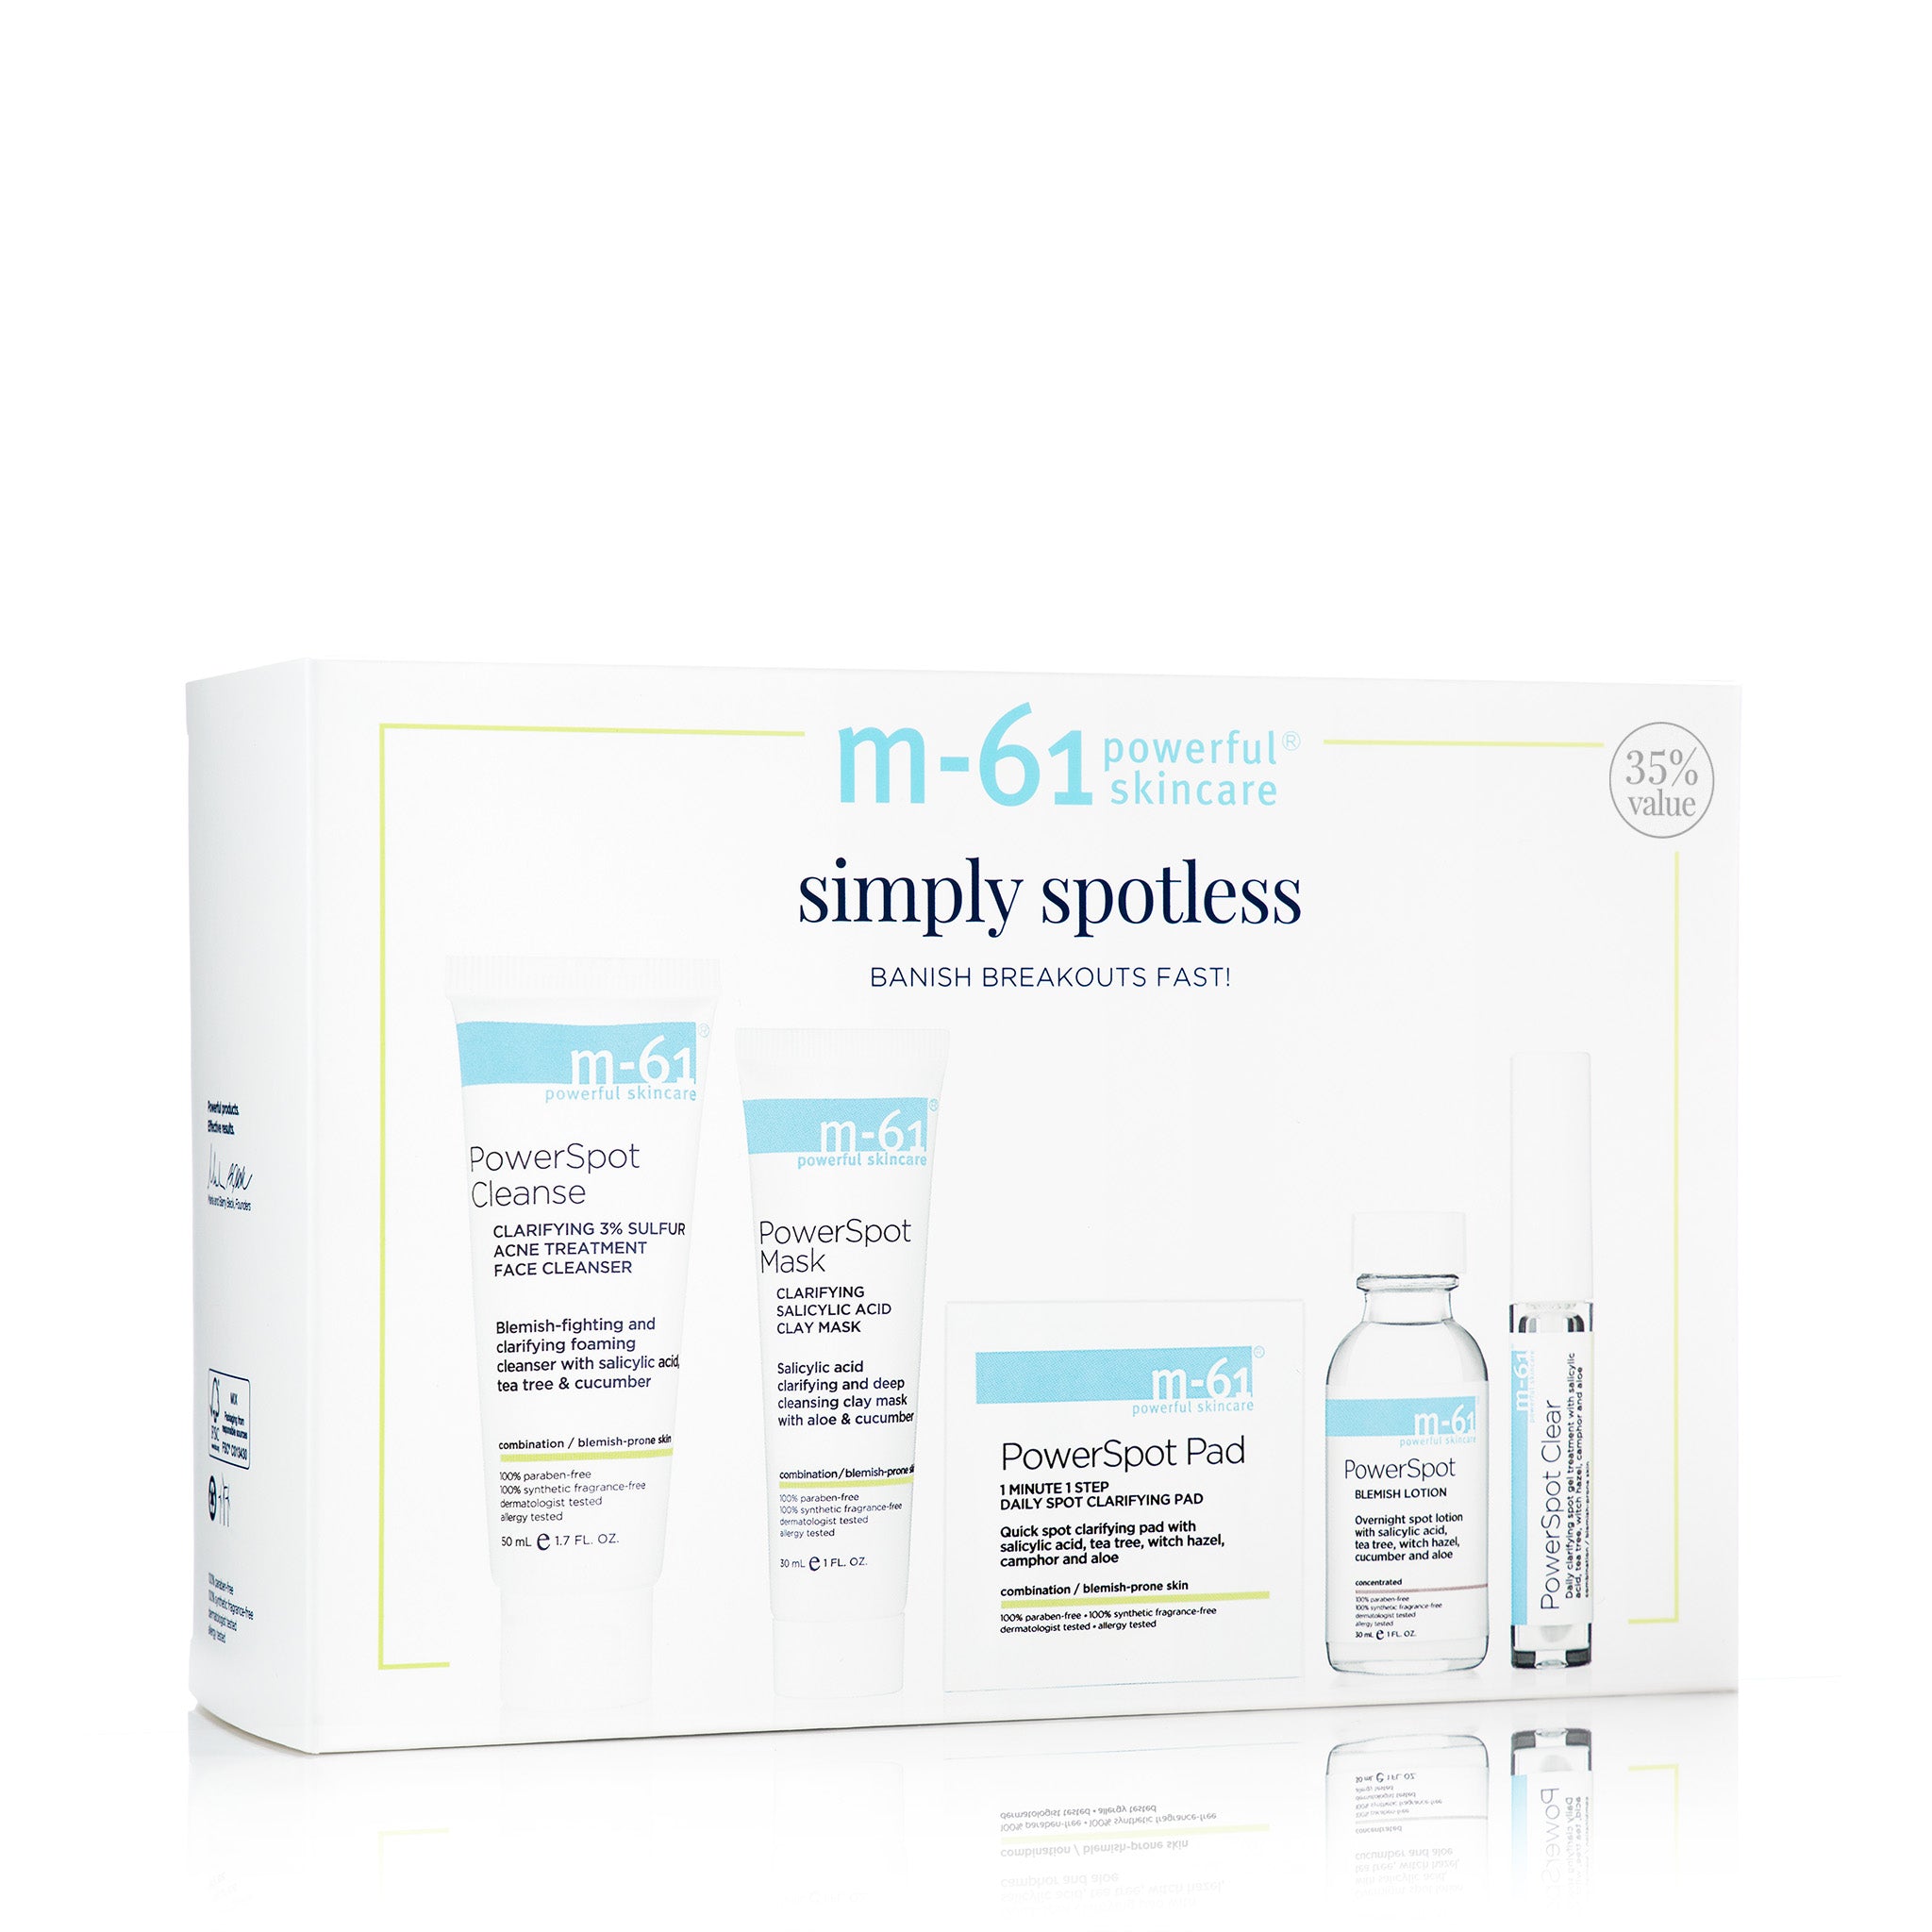 Simply Spotless Skincare Set - Blemish-Fighting Skincare Set – m